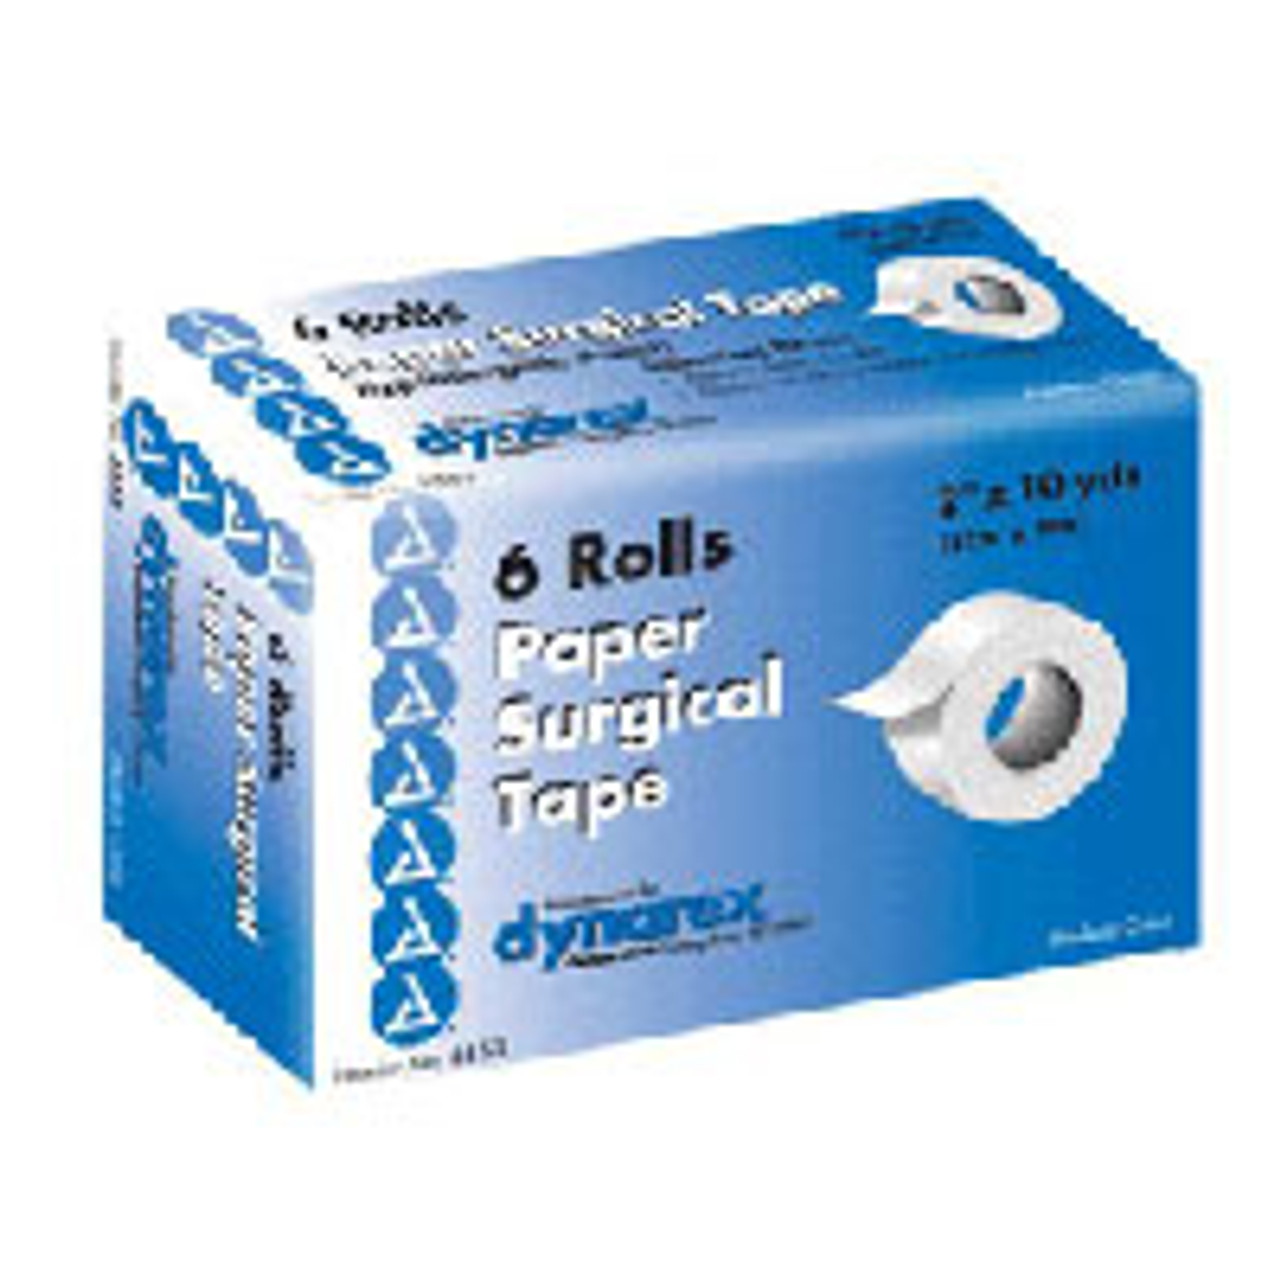 Paper Tape 2 x 10 yd - (Box of 6 Rolls)